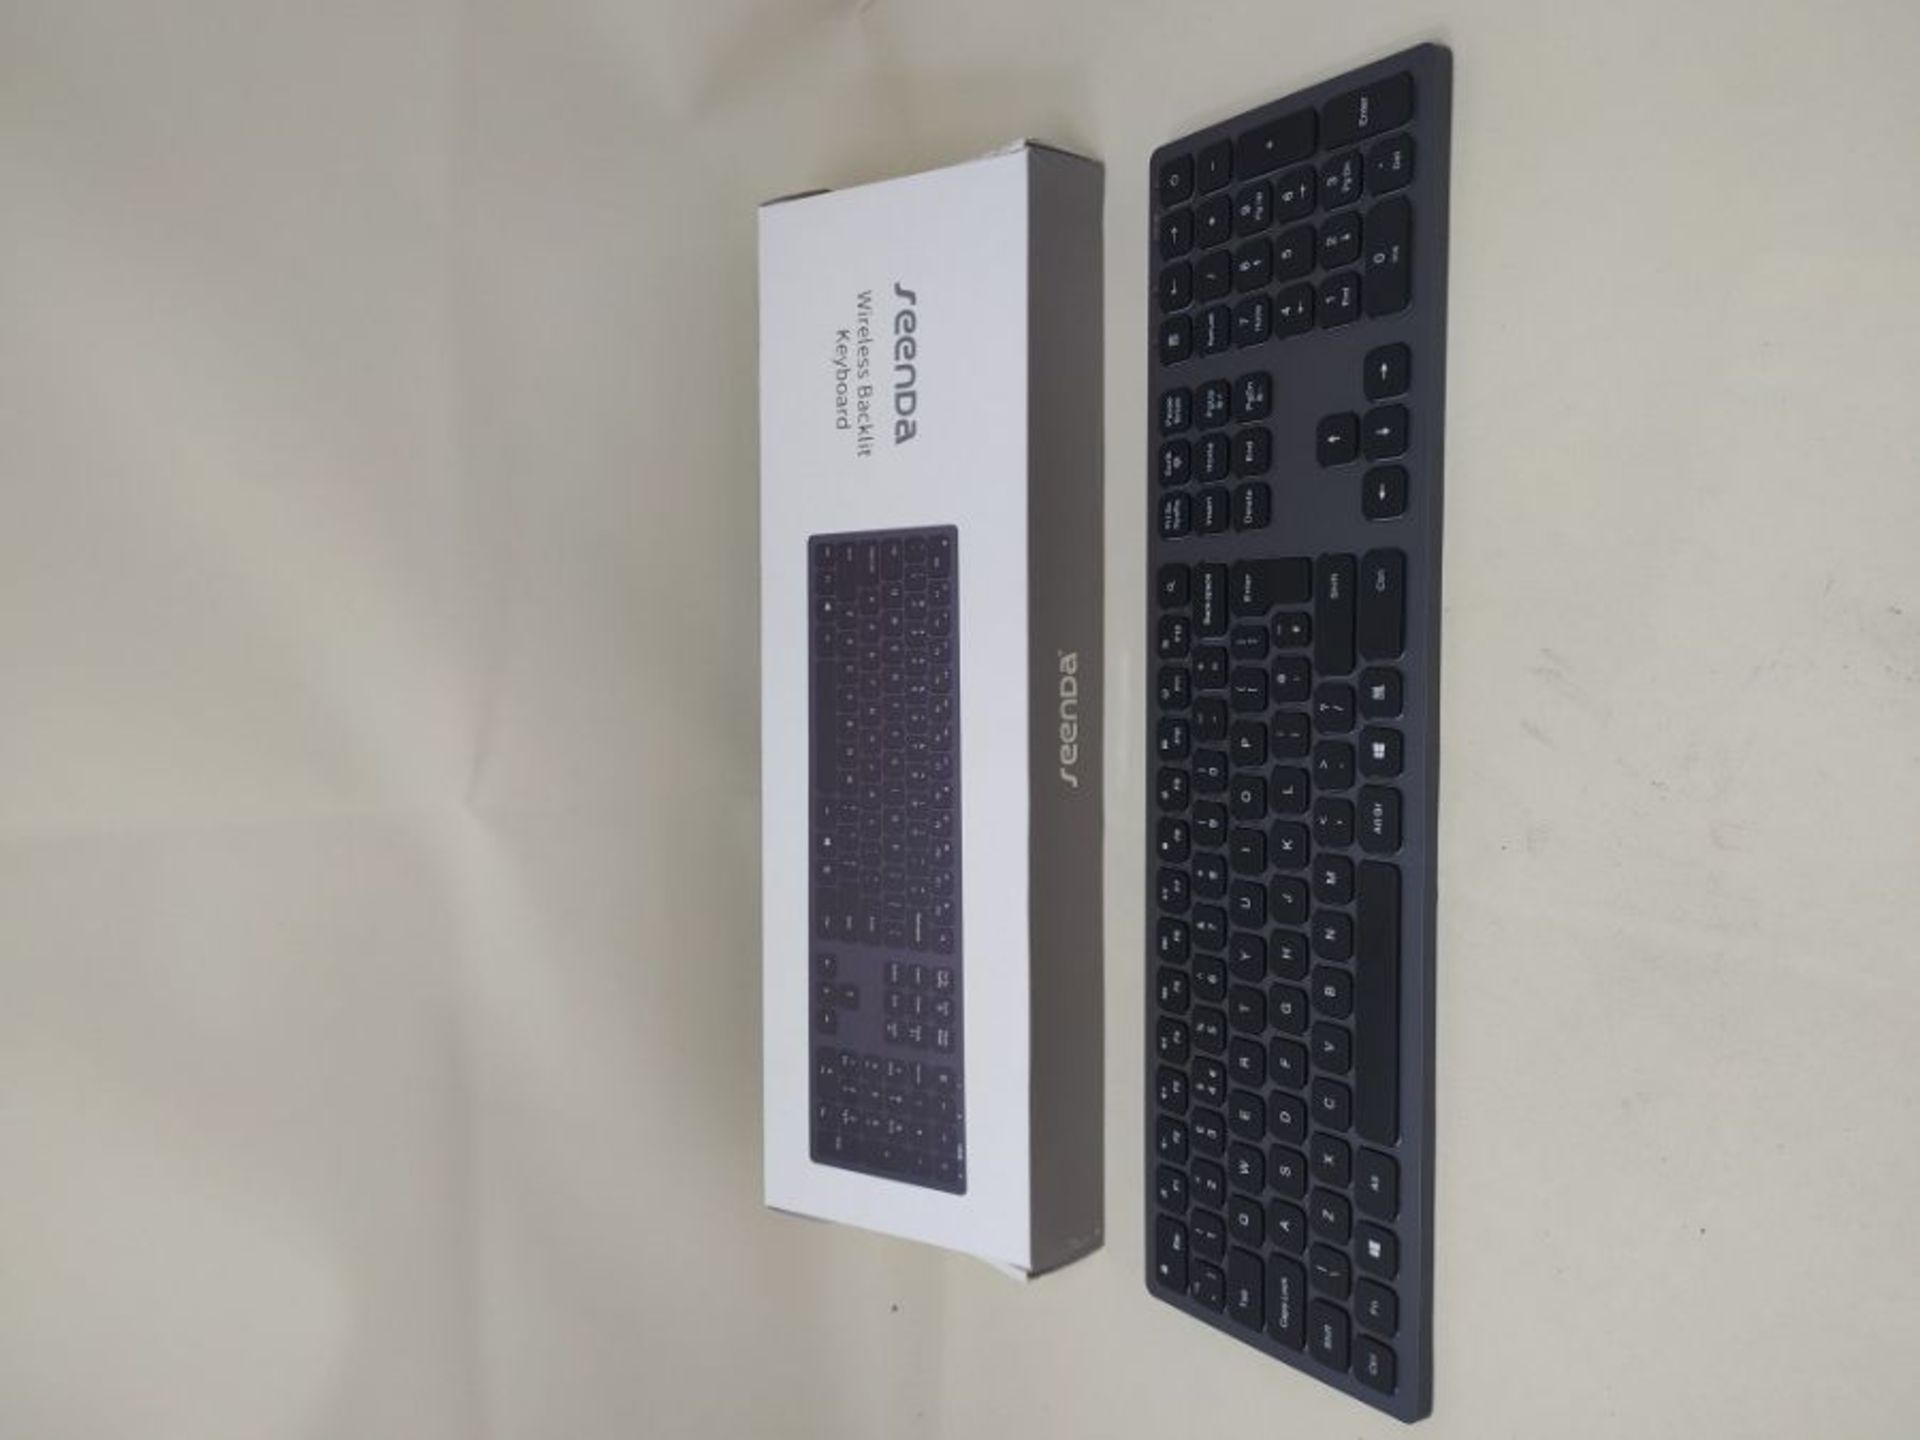 Wireless Backlit Keyboard,Seenda 2.4G Rechargeable USB Wireless Keyboard White Illumin - Image 2 of 2